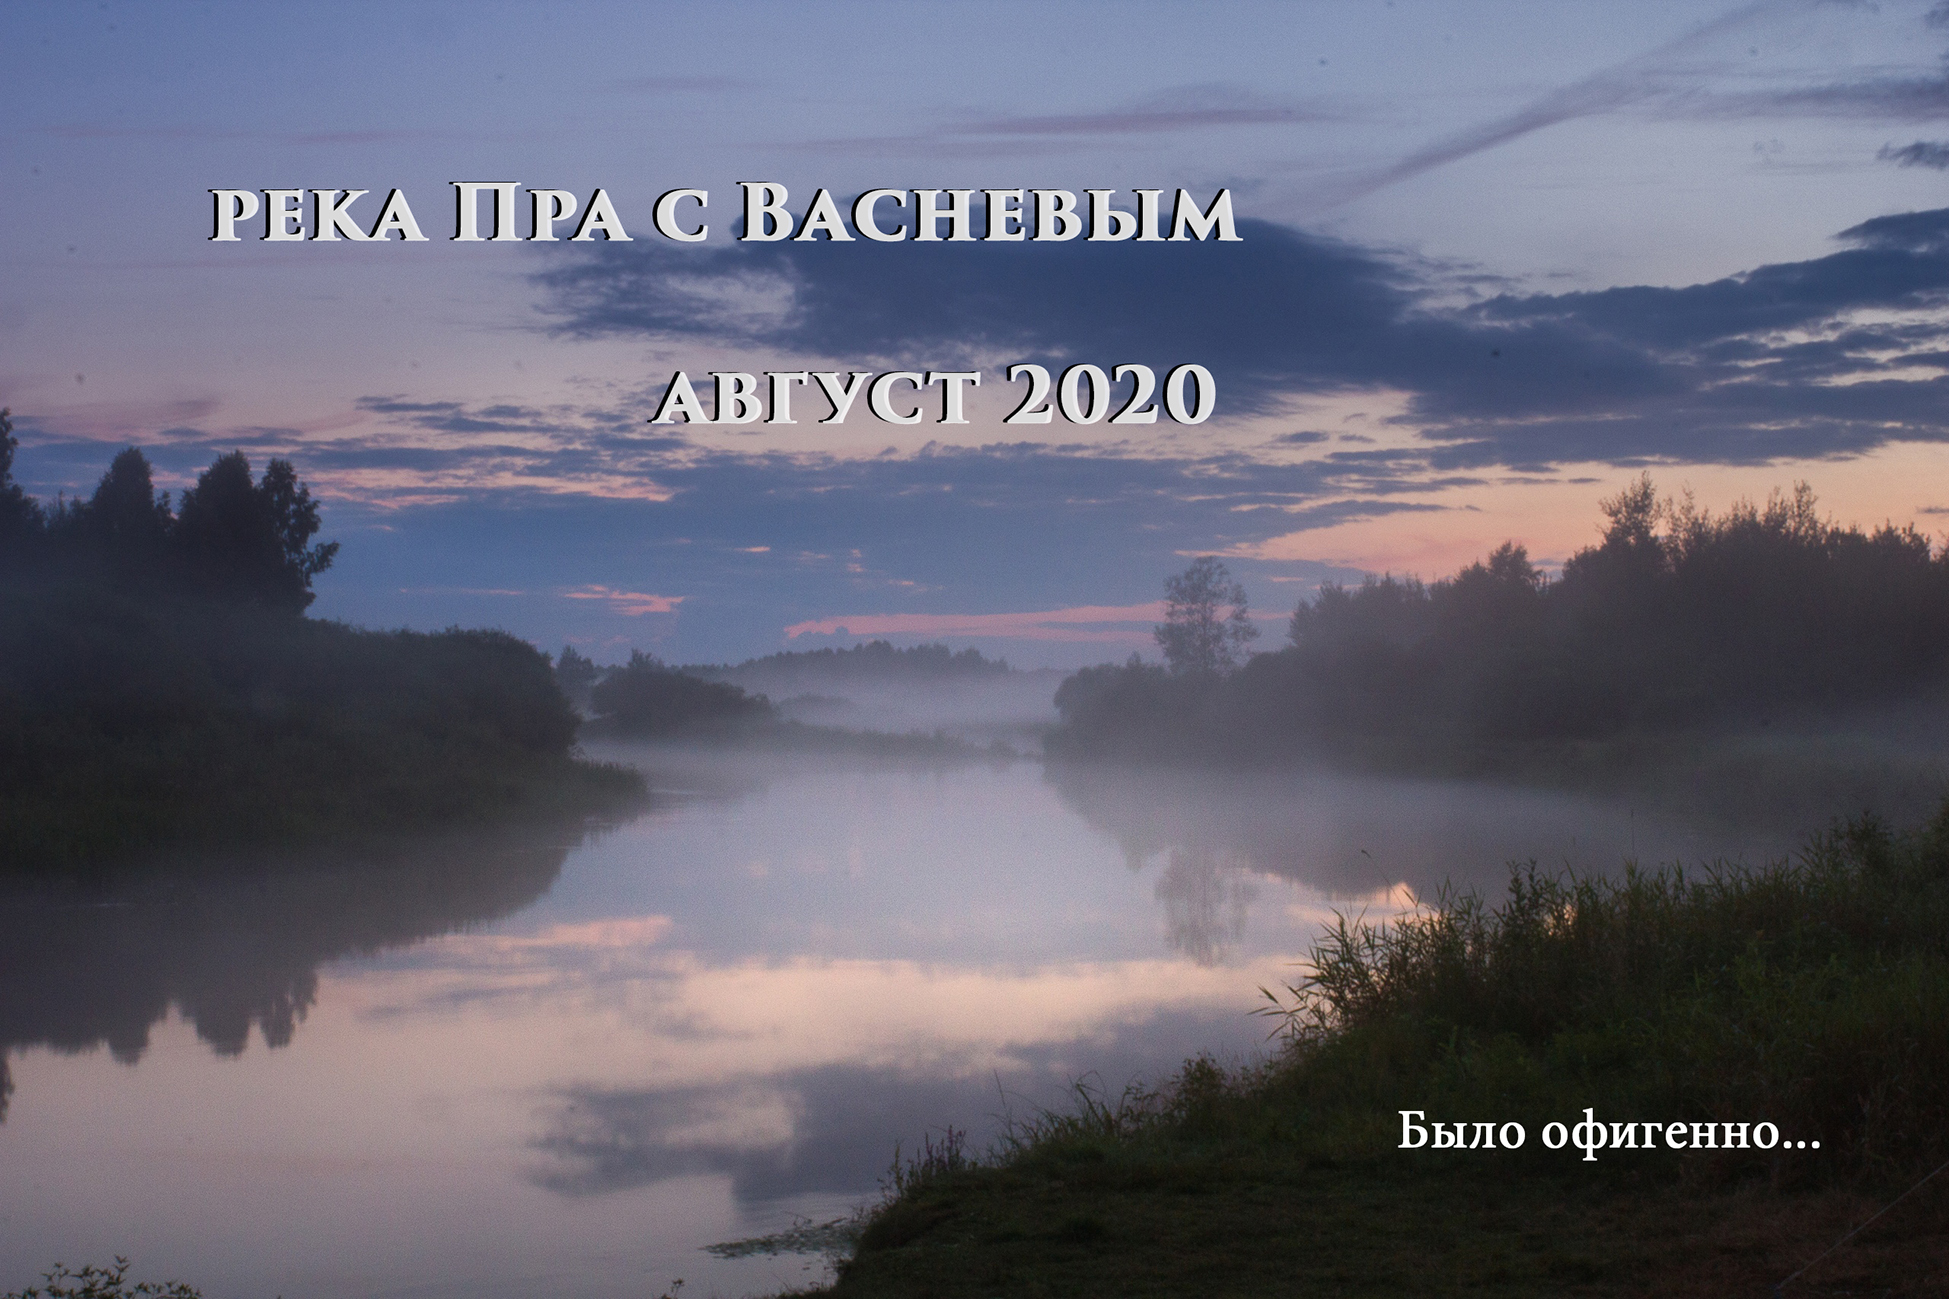 Сплав по реке Пра летом 2020 года. 